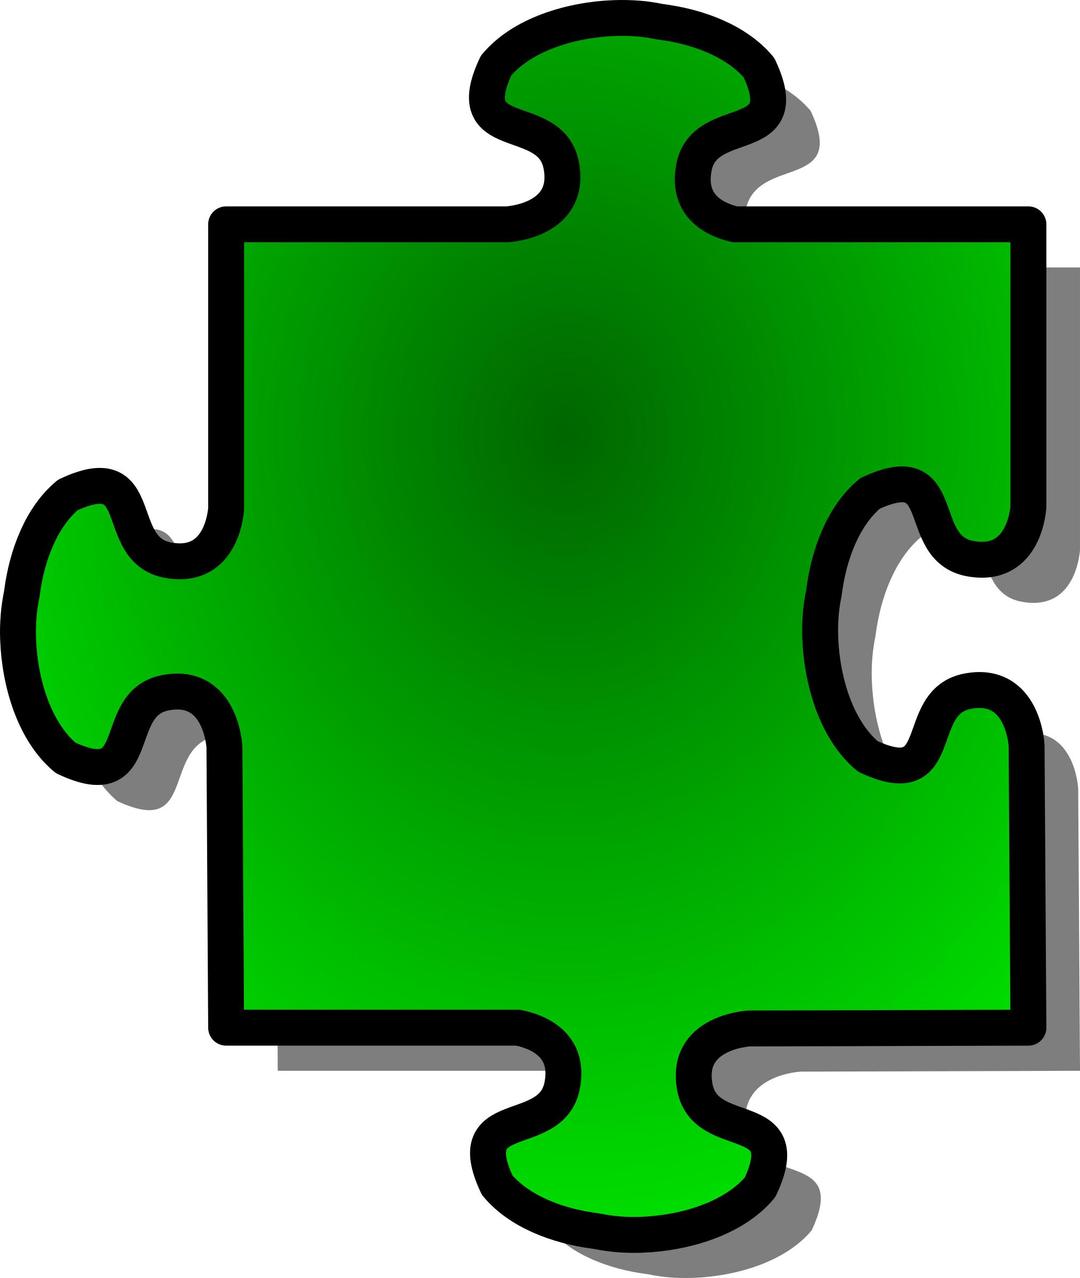 Green Jigsaw piece 07 png transparent